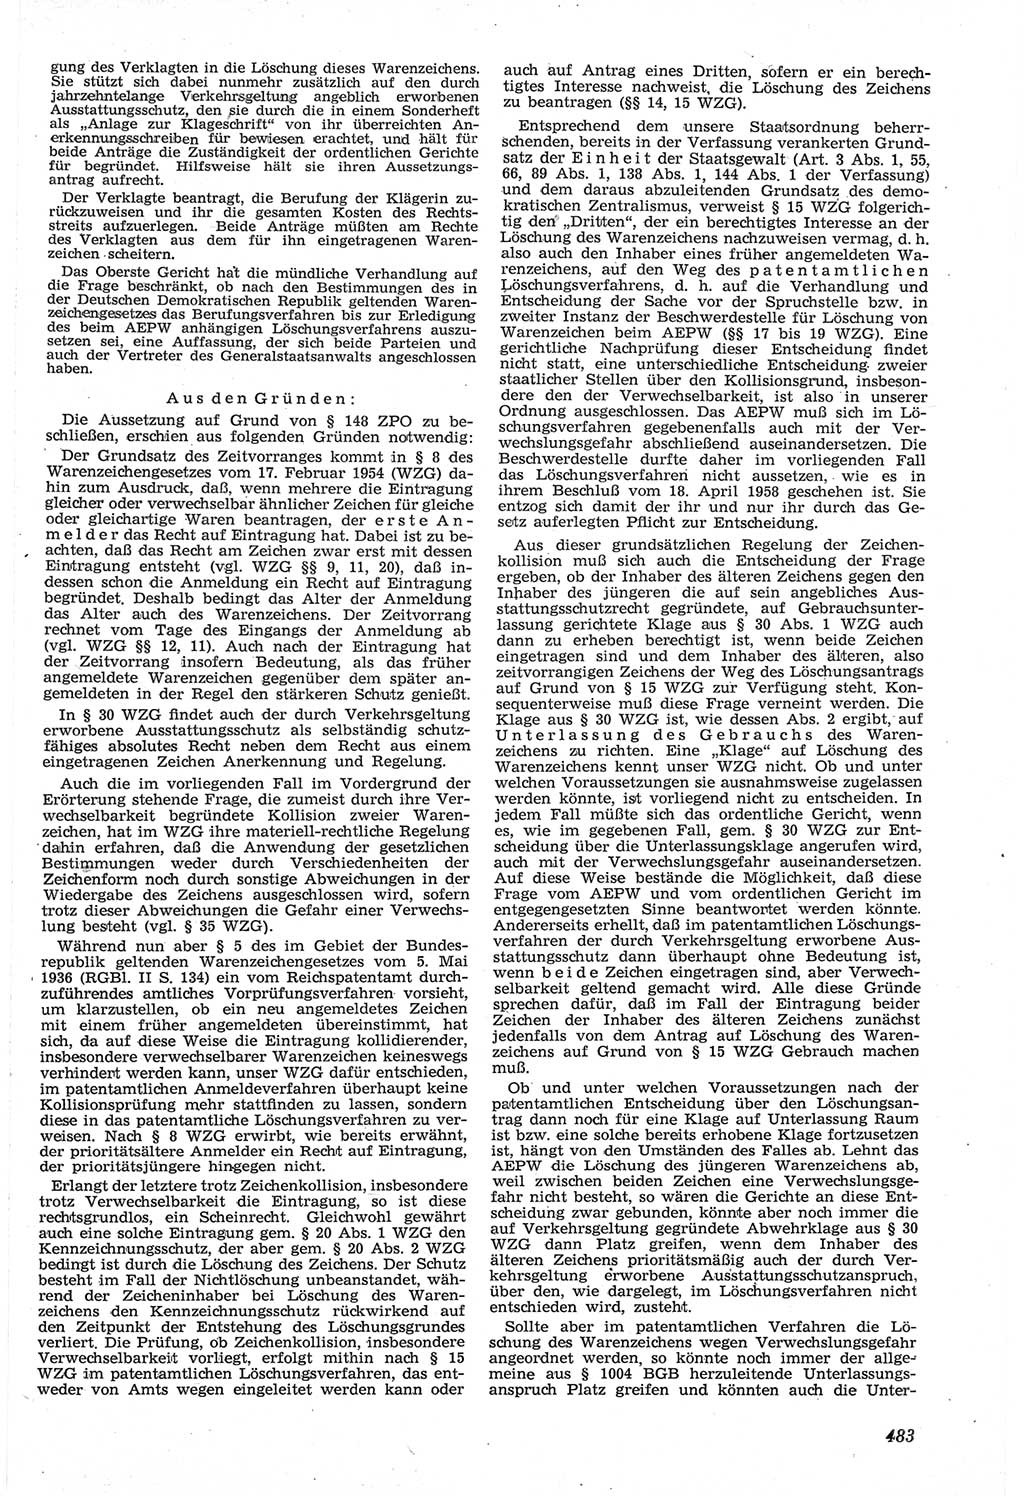 Neue Justiz (NJ), Zeitschrift für Recht und Rechtswissenschaft [Deutsche Demokratische Republik (DDR)], 14. Jahrgang 1960, Seite 483 (NJ DDR 1960, S. 483)